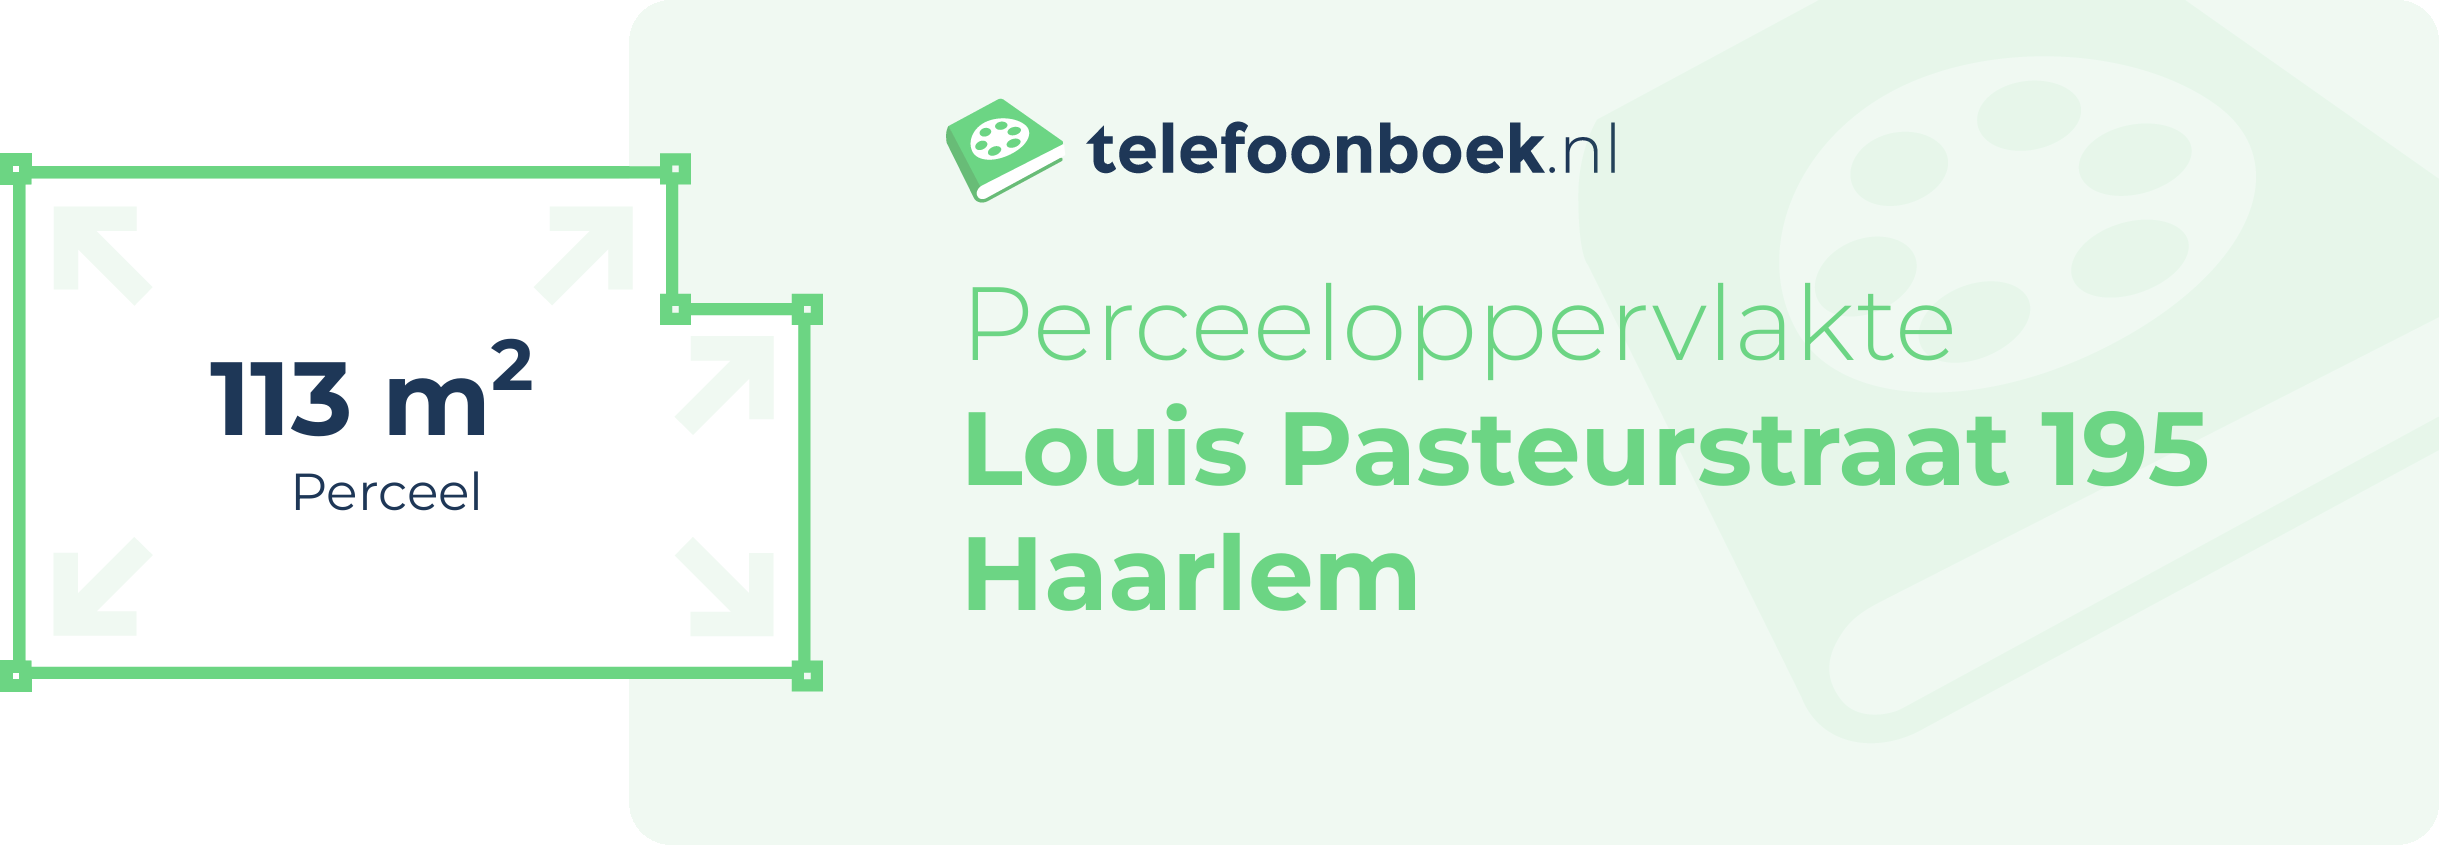 Perceeloppervlakte Louis Pasteurstraat 195 Haarlem